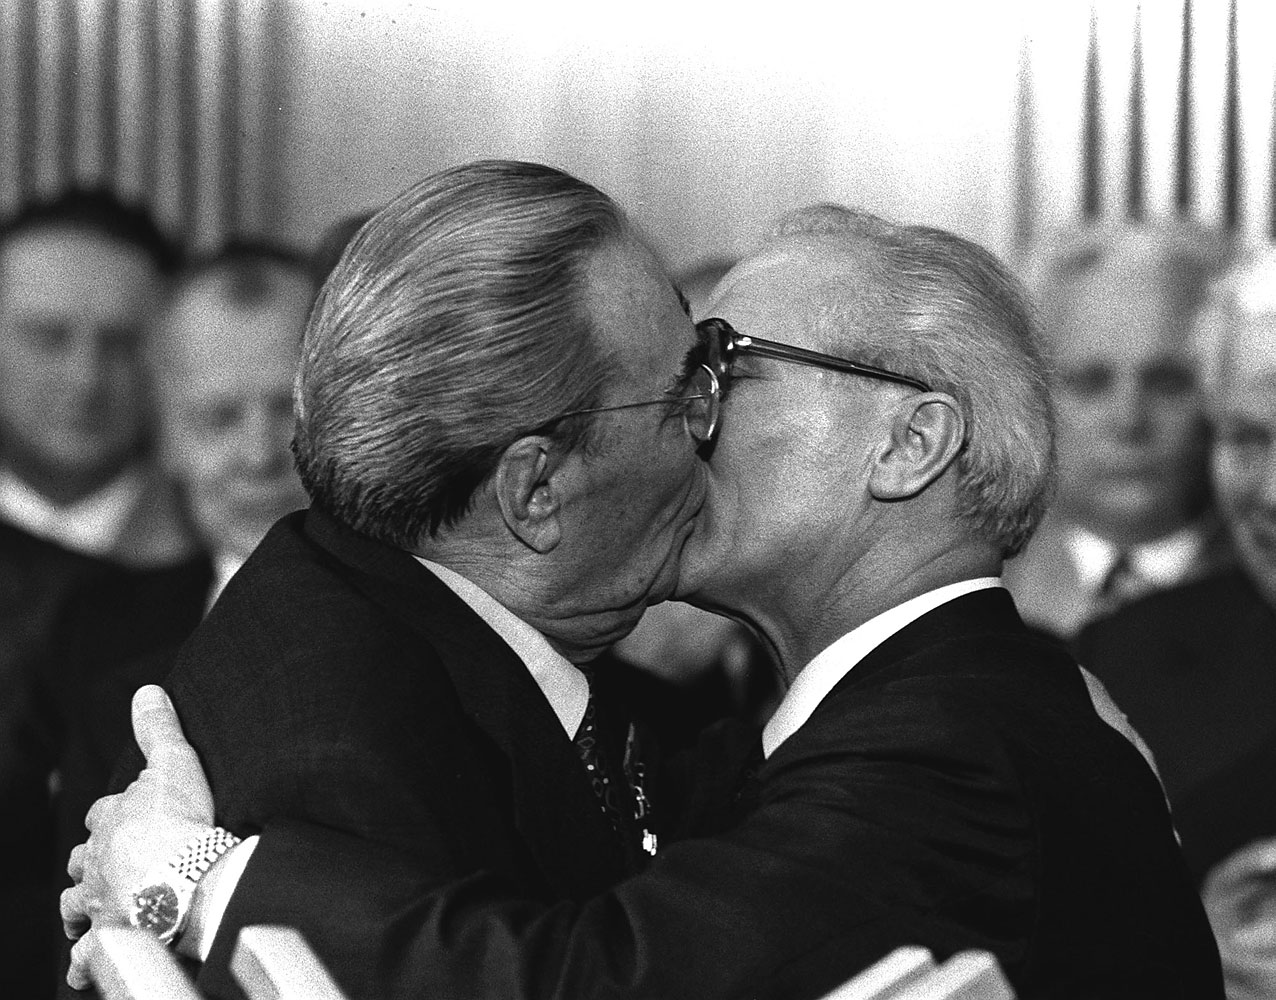 Soviet President Leonid Brezhnev and East German leader Erich Honecker